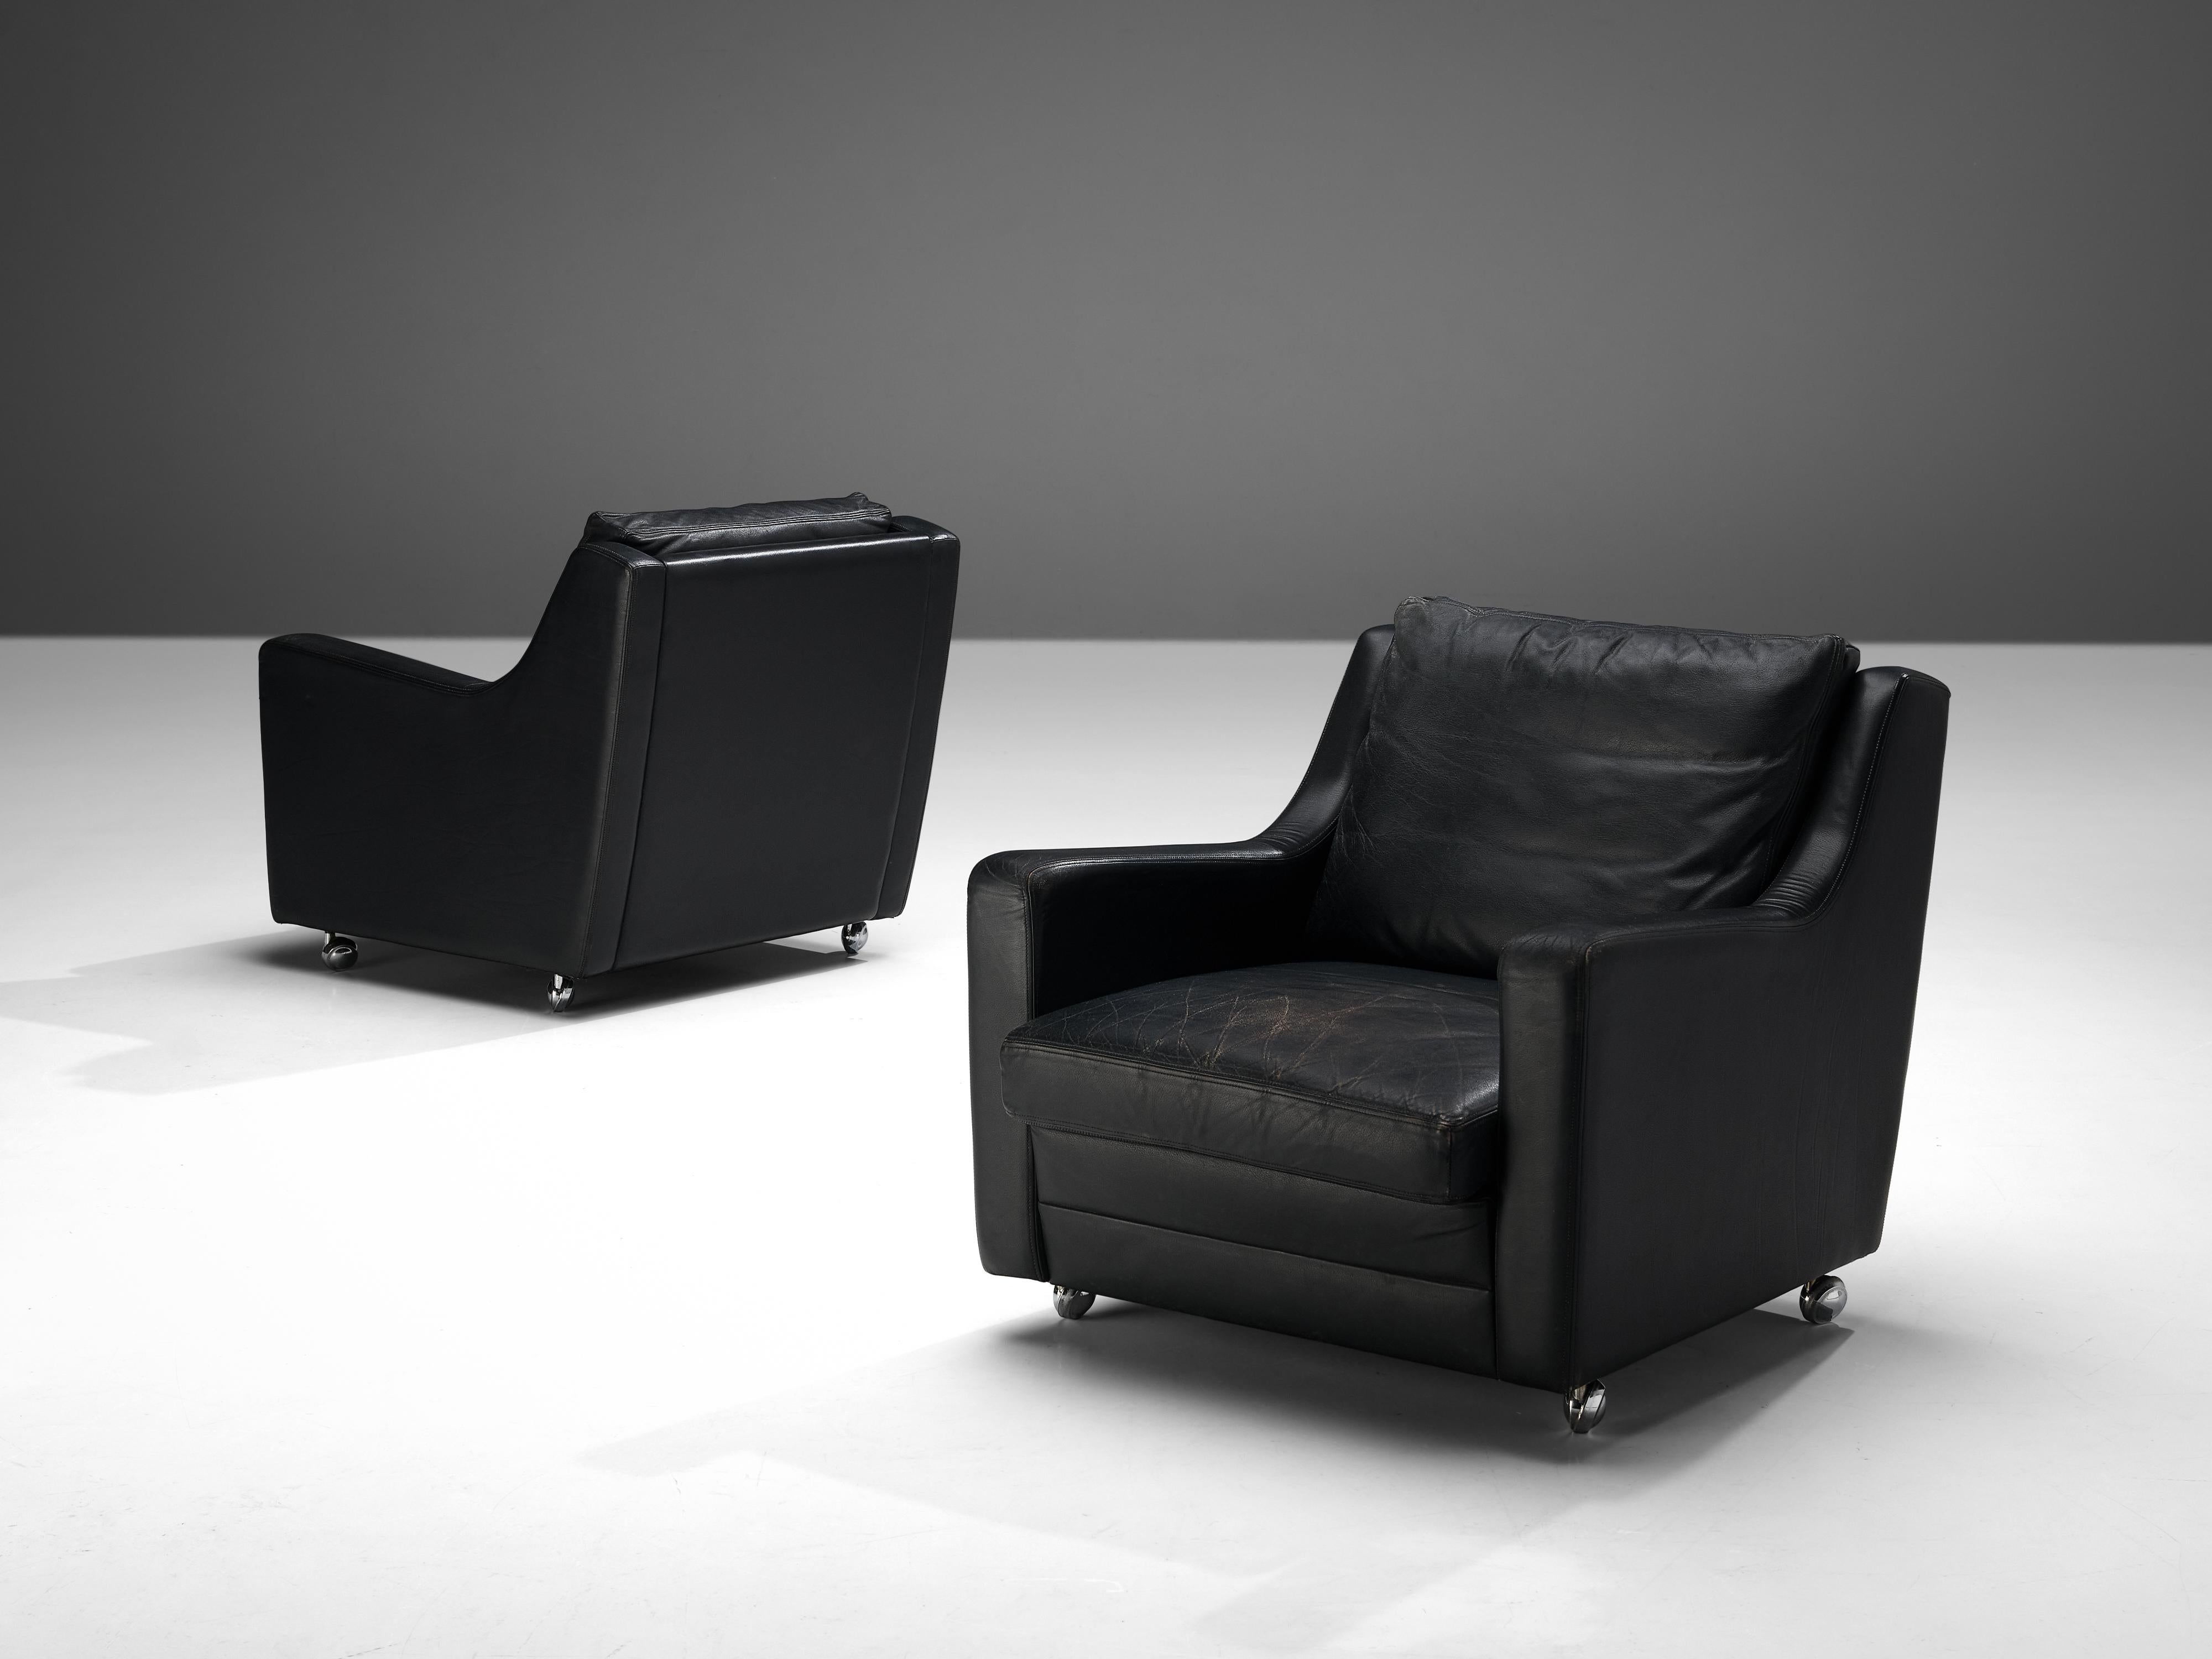 Paire de chaises longues, cuir noir, acier, Europe, années 1970

Le design de cette étonnante paire de chaises longues présente de belles lignes claires, contribuant à un aspect sculptural. Le dossier se prolonge en douceur dans les accoudoirs,